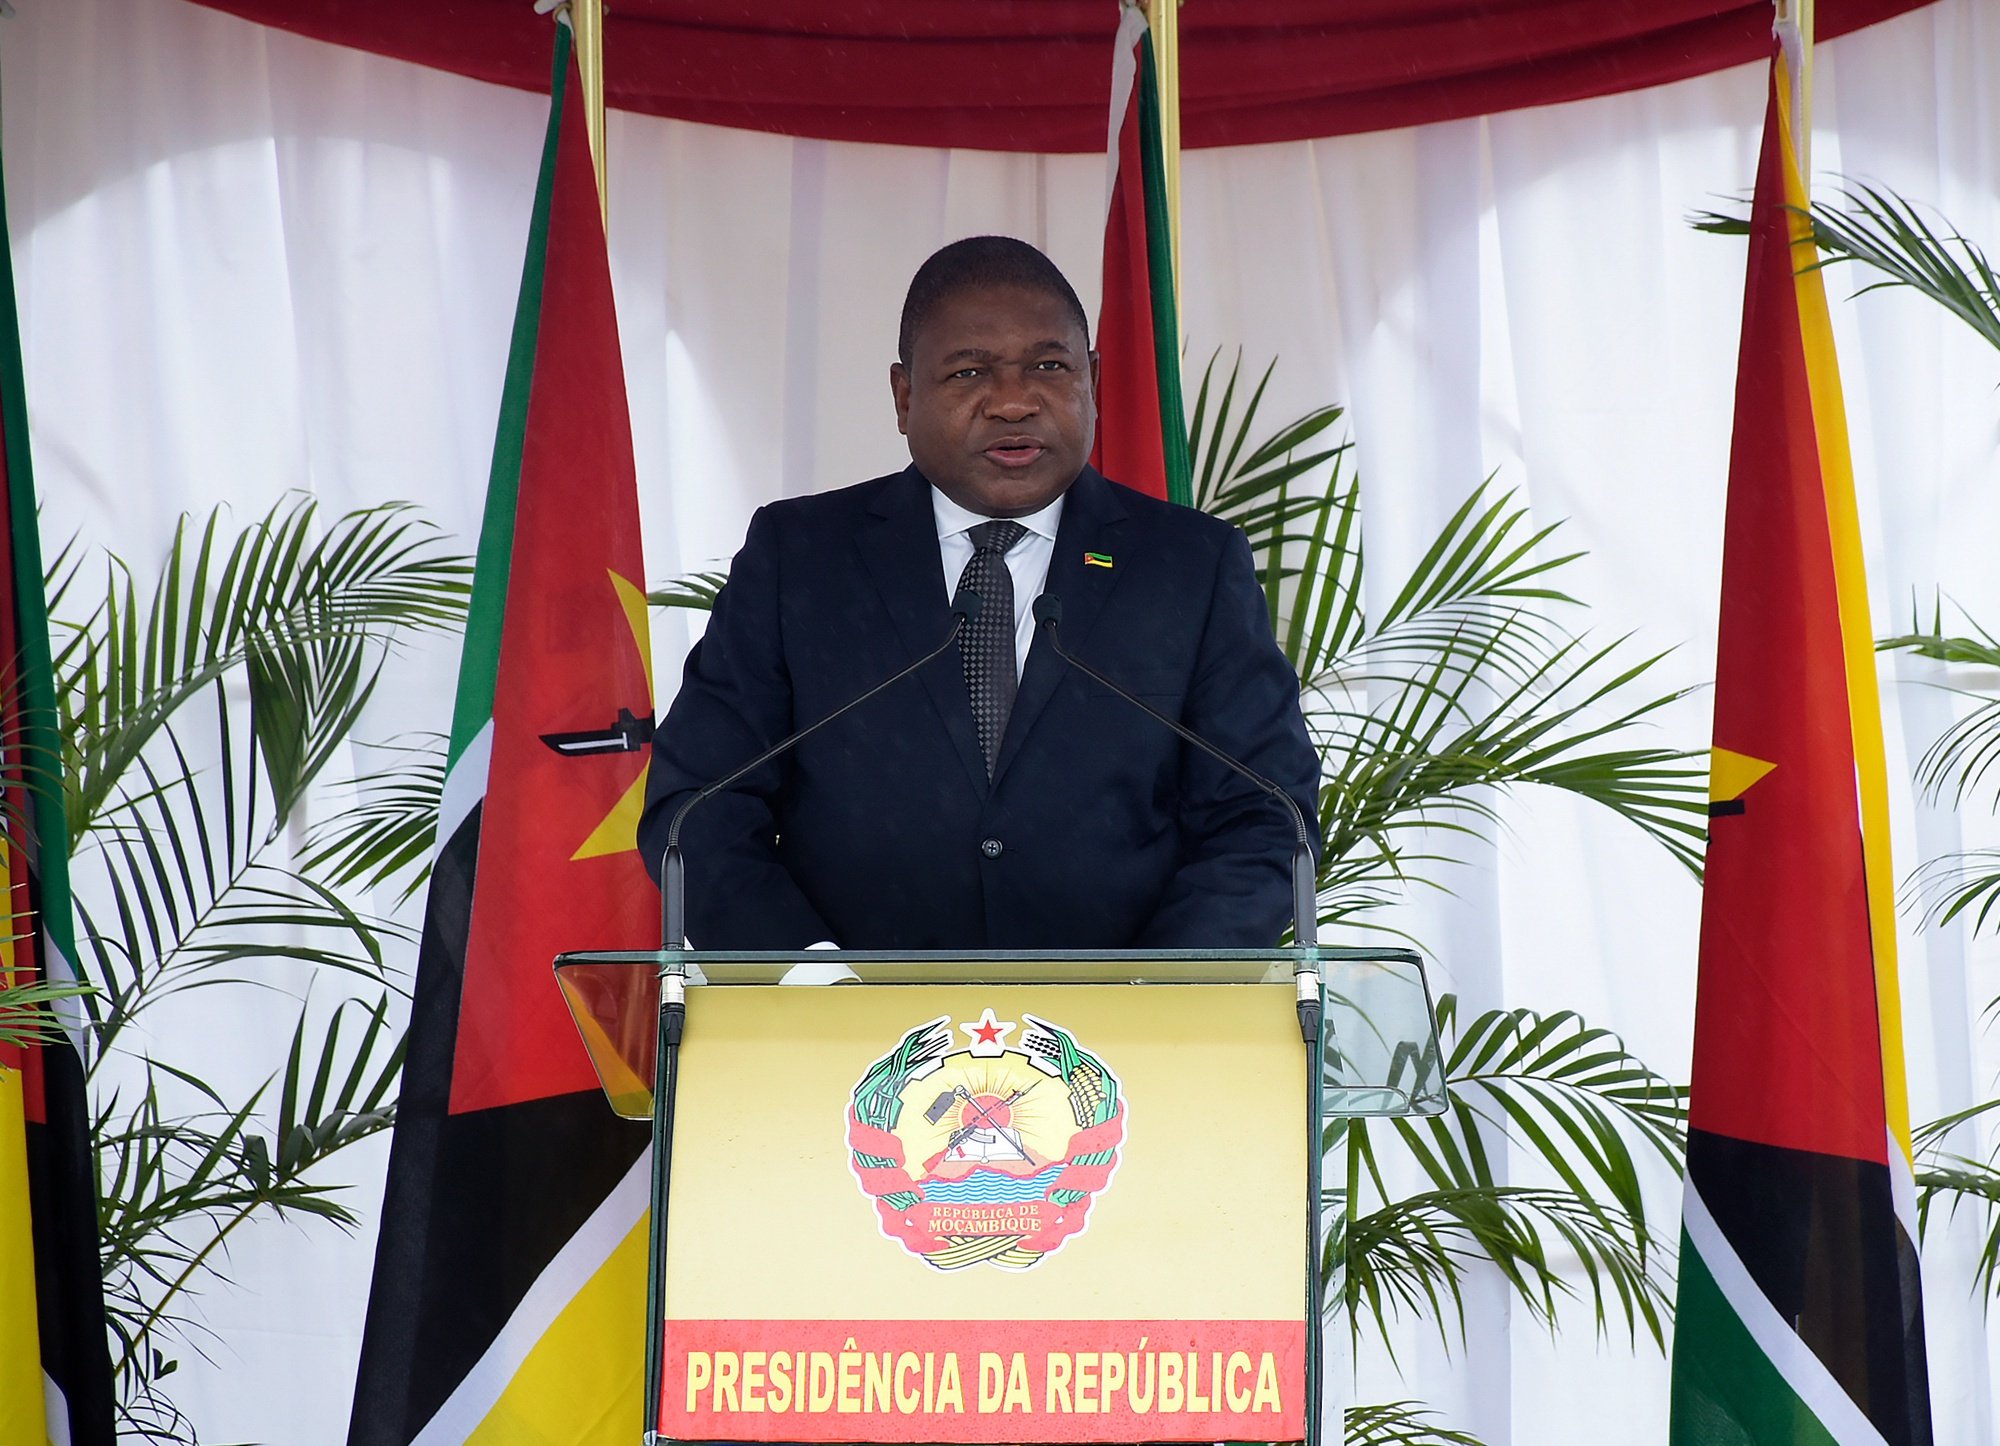 O Presidente da República de Moçambique, Filipe Nyusi, discursa durante as cerimónias de comemoração do Dia dos Heróis Nacionais, em Maputo, Moçambique, 03 de fevereiro 2021. PRESIDÊNCIA DA REPÚBLICA DE MOÇAMBIQUE/LUSA